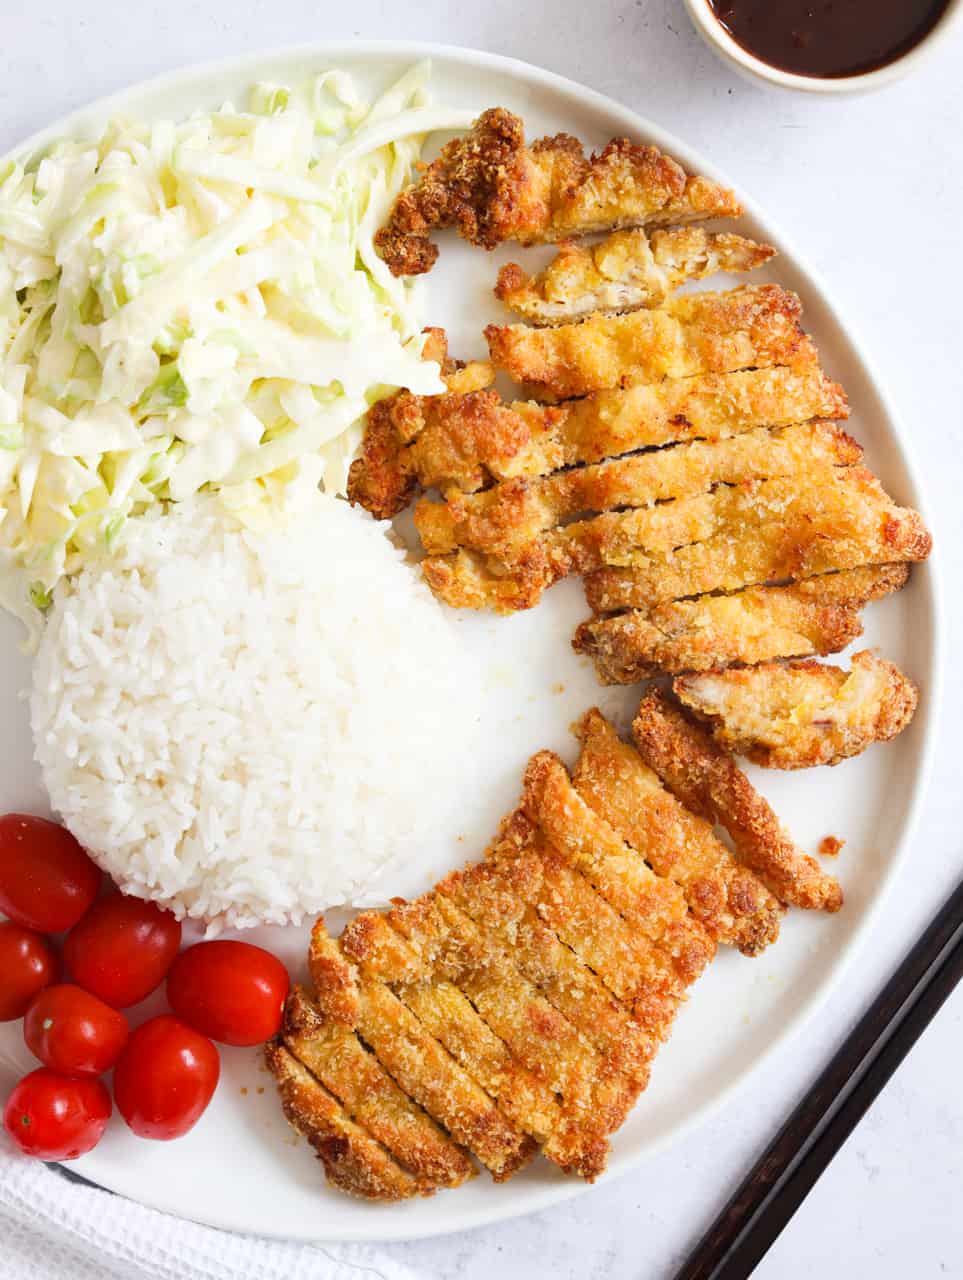 Air Fryer Chicken Katsu